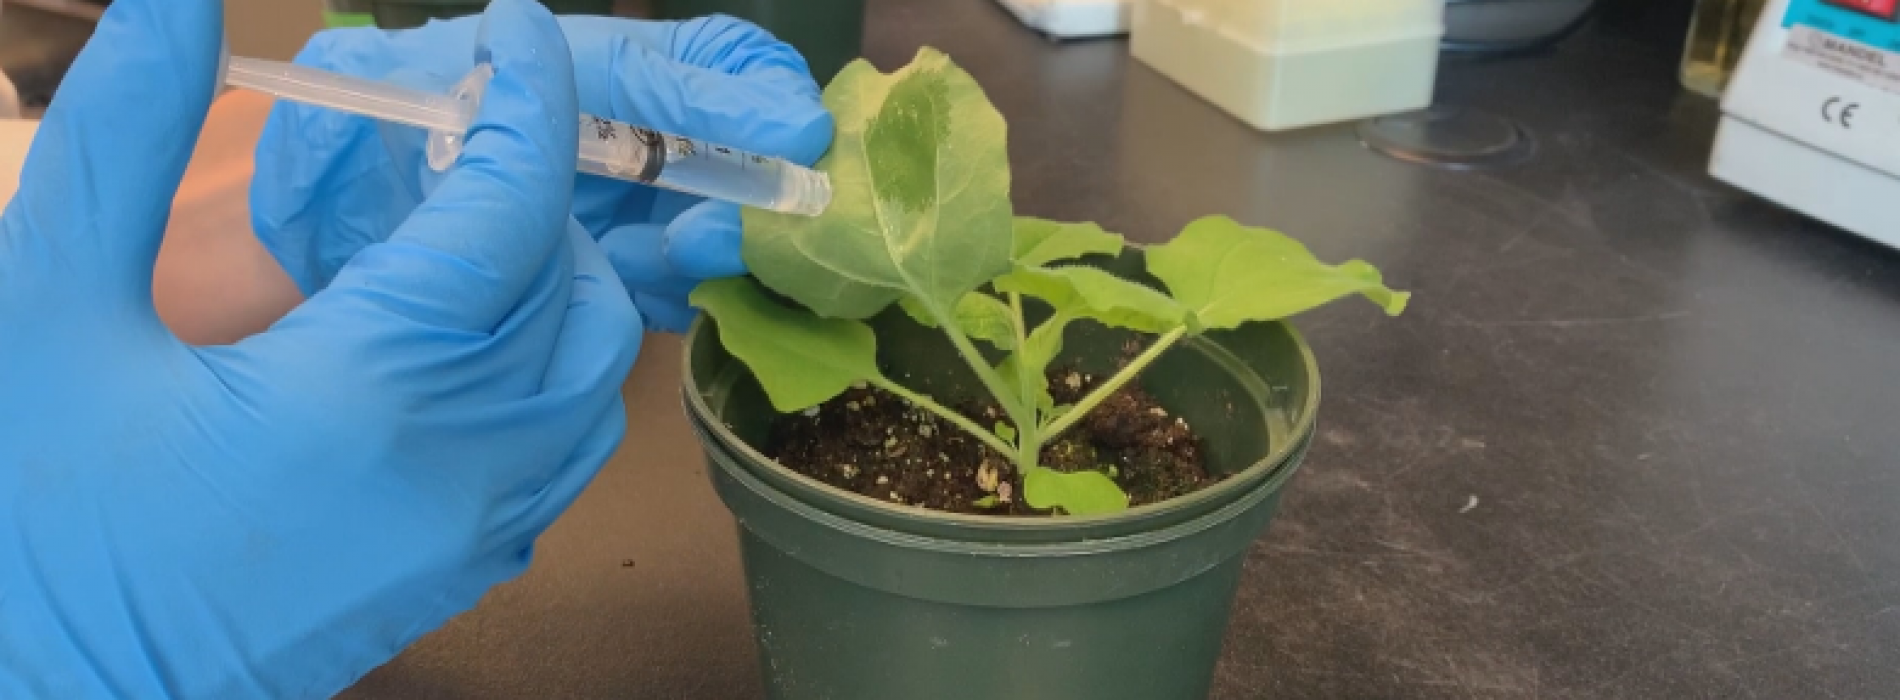 Wetenschapper ontwikkelt op planten gebaseerd eetbaar vaccin voor COVID-19